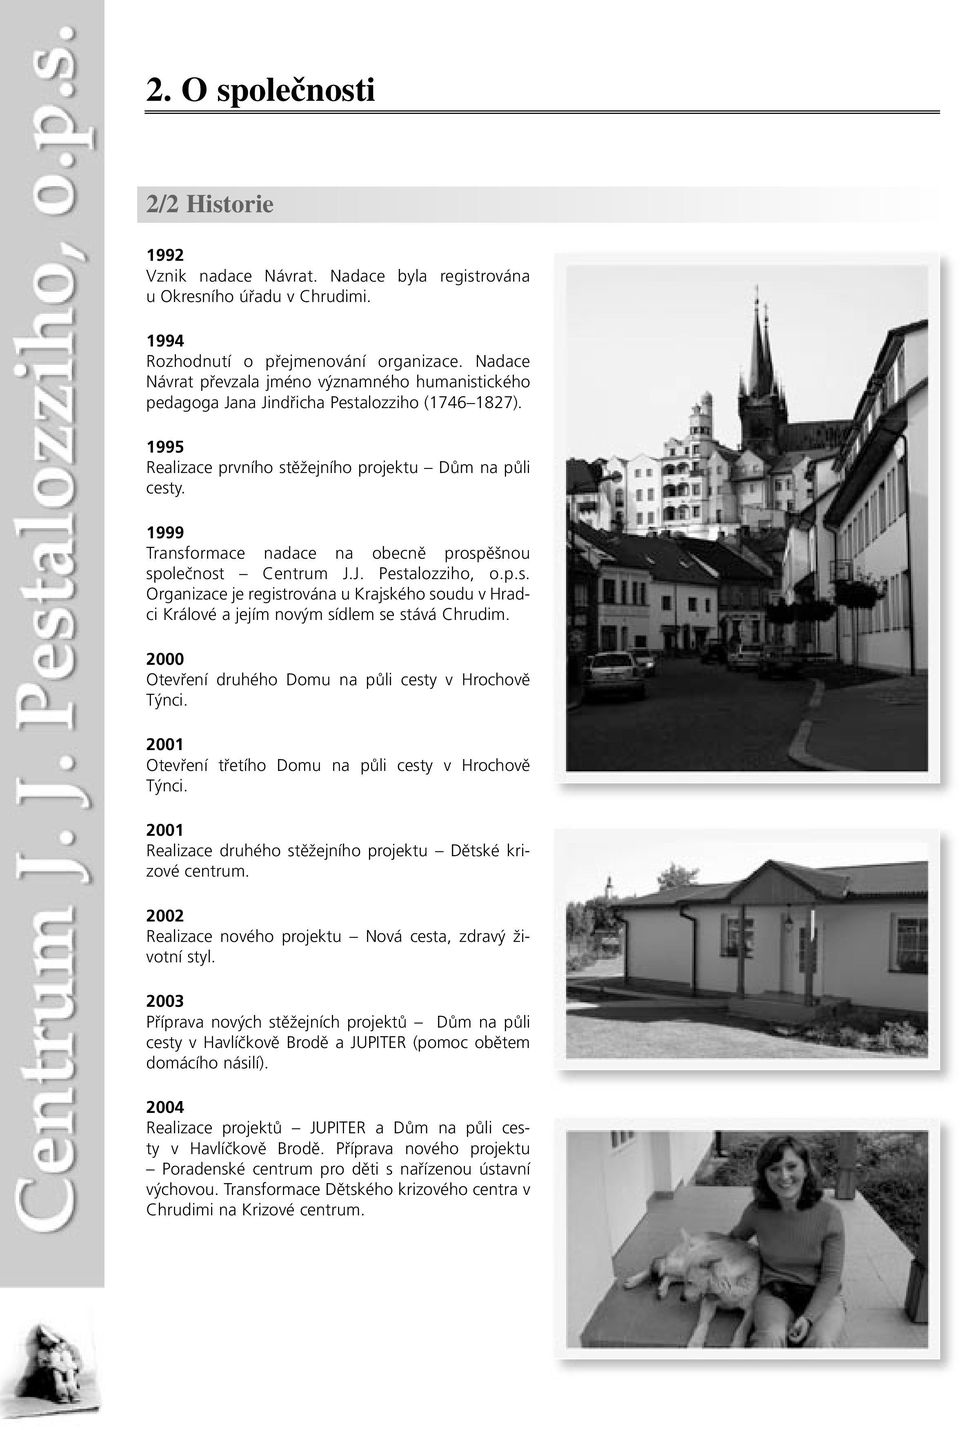 1999 Transformace nadace na obecně prospěšnou společnost Centrum J.J. Pestalozziho, o.p.s. Organizace je registrována u Krajského soudu v Hradci Králové a jejím novým sídlem se stává Chrudim.